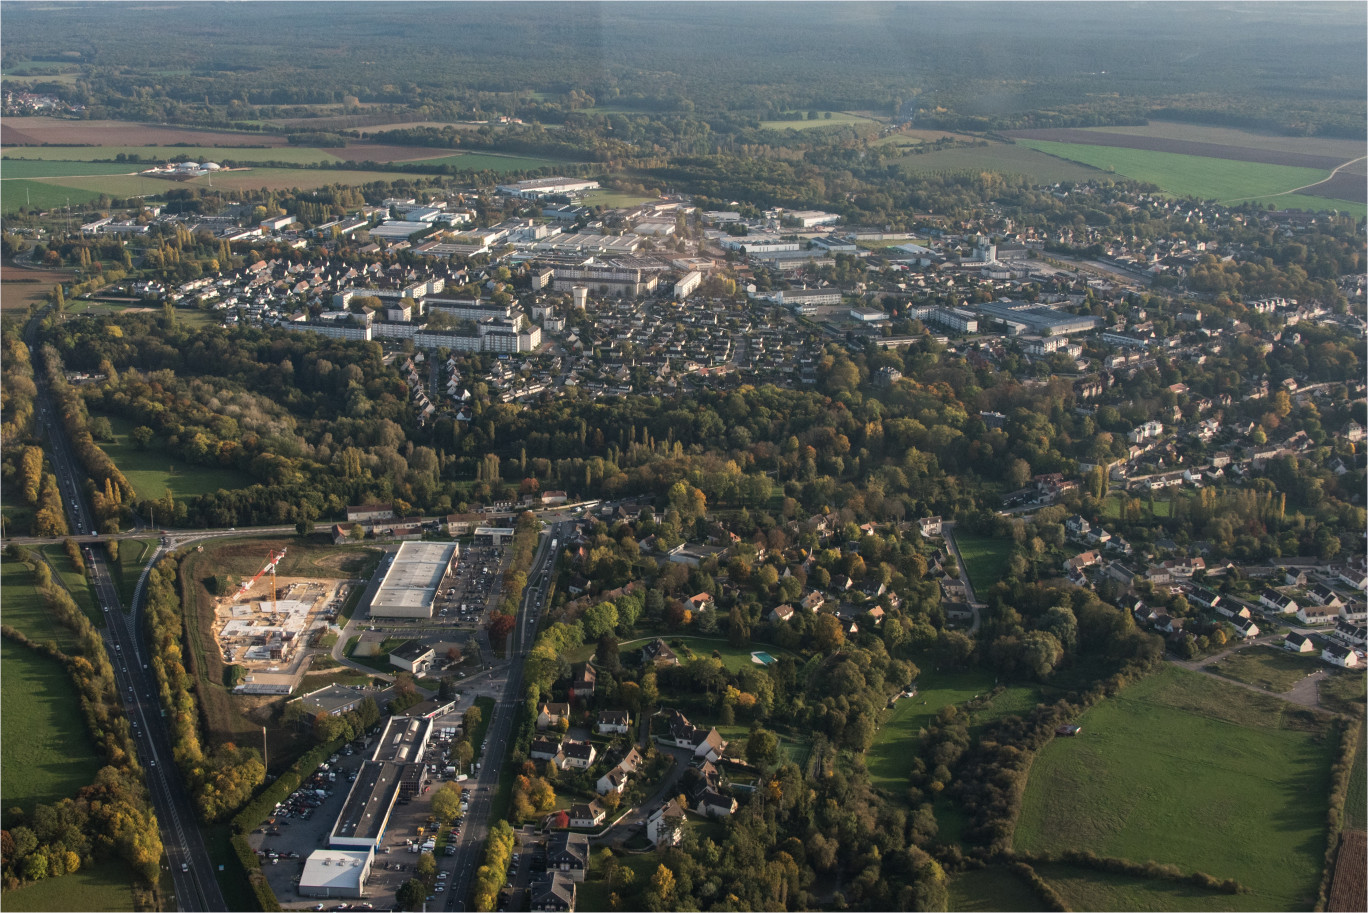 Vue aérienne de la ville de Senlis. (c)François